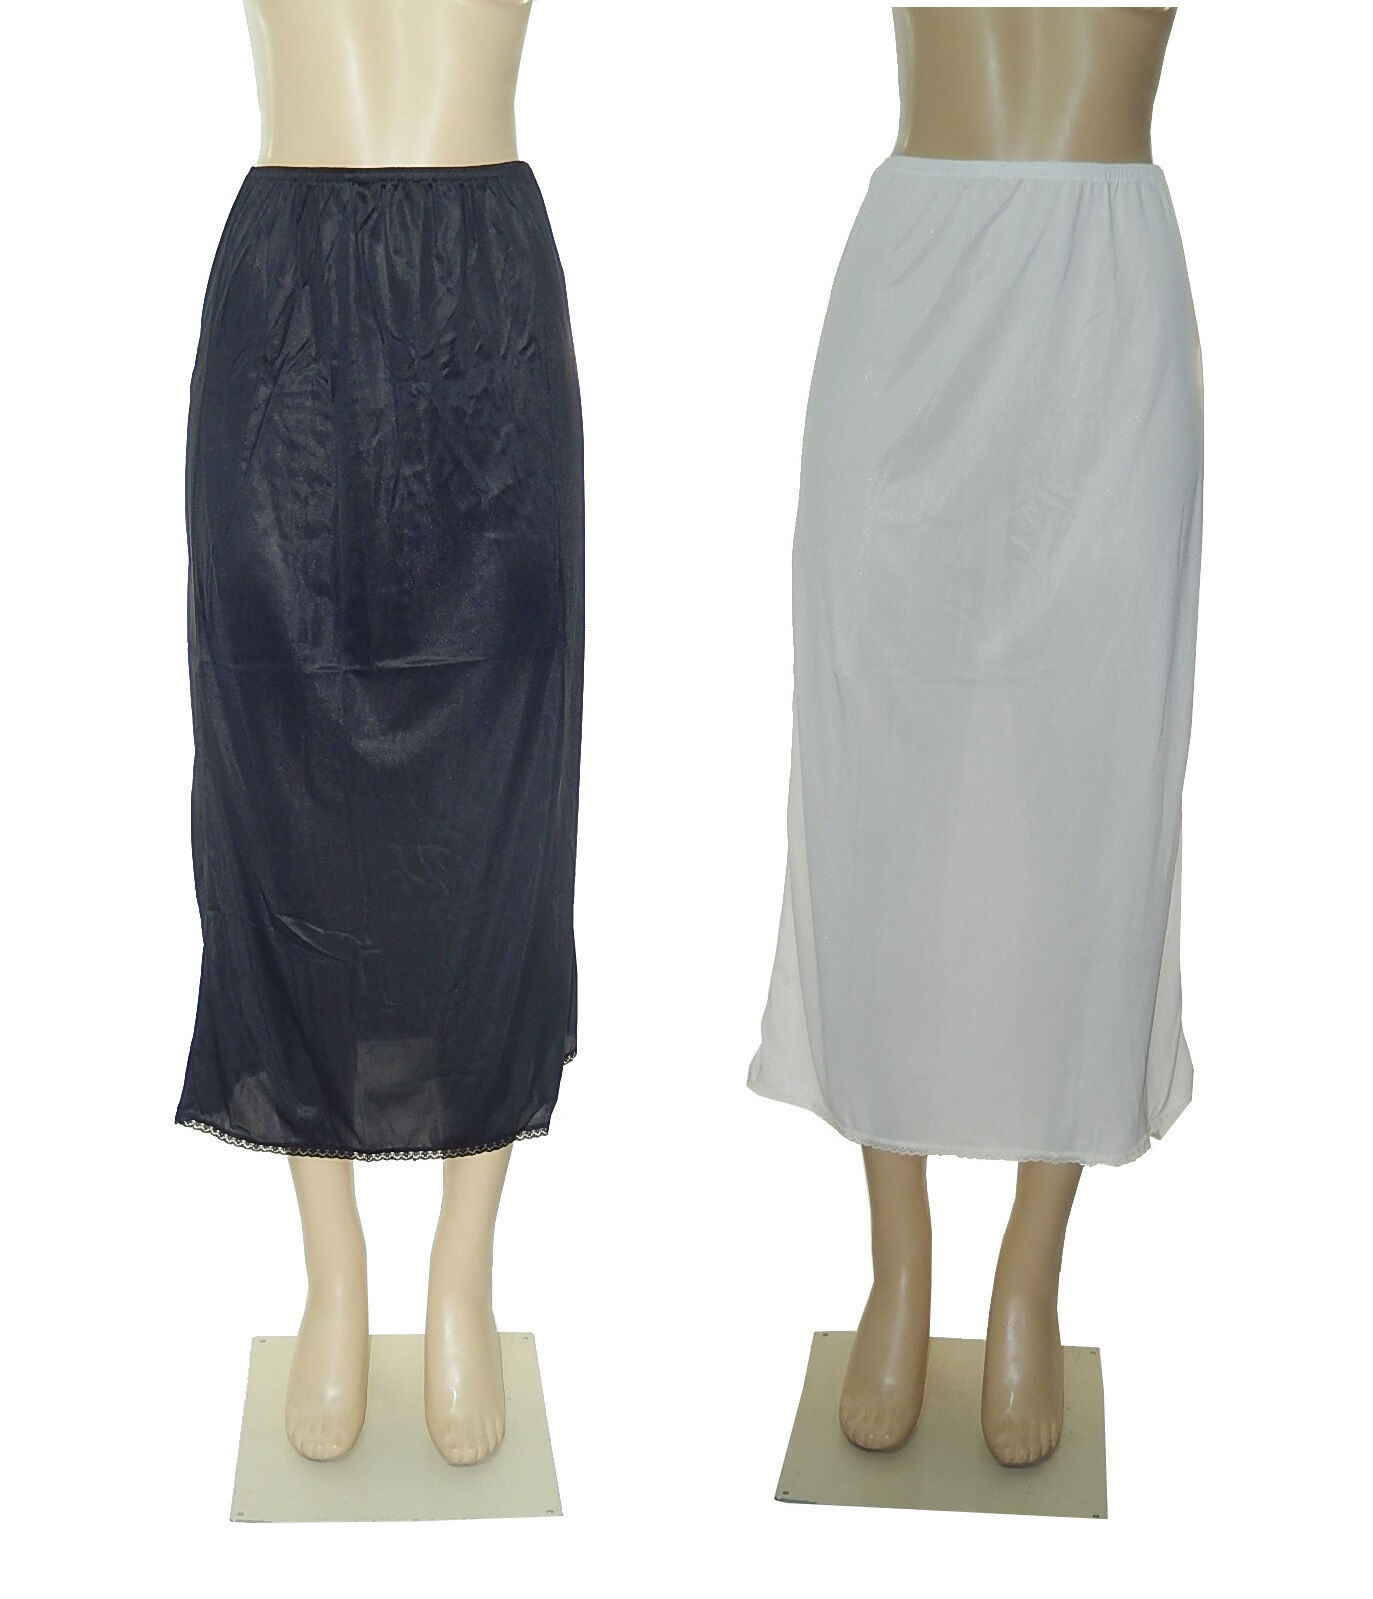 36" Length Women Plain Long Half Slip 100% Polyester Size S M L Xl 2x 3x 4x 5x